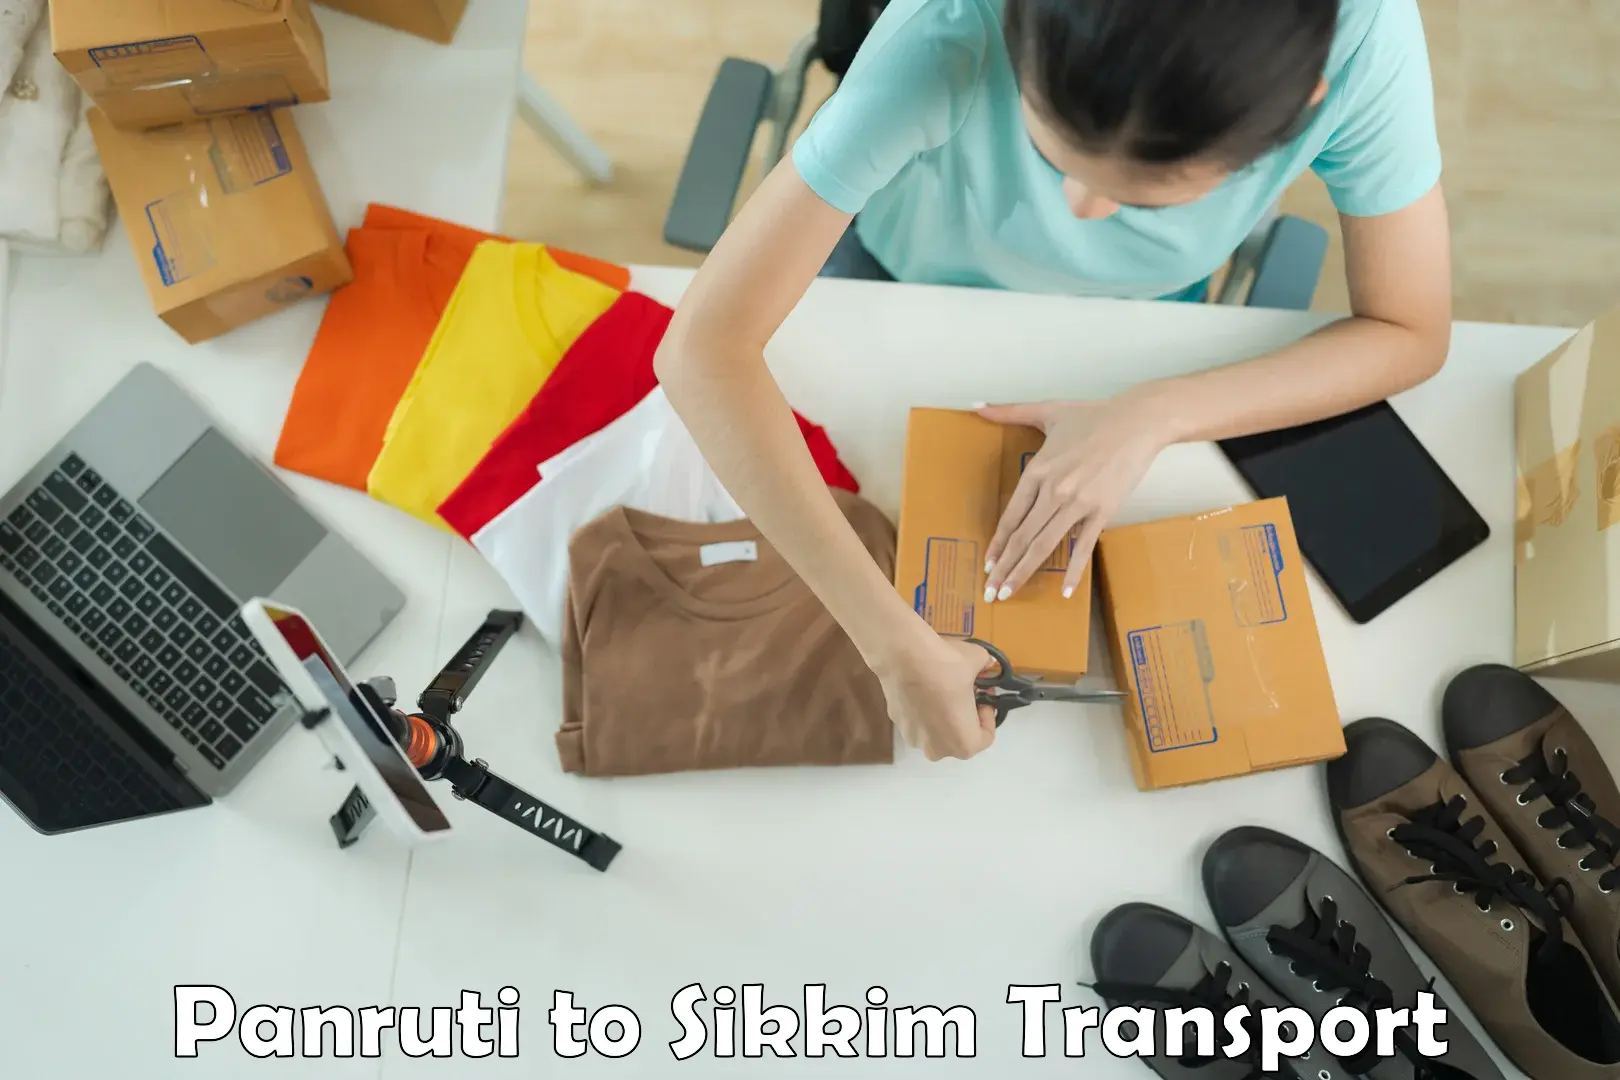 Furniture transport service Panruti to Mangan